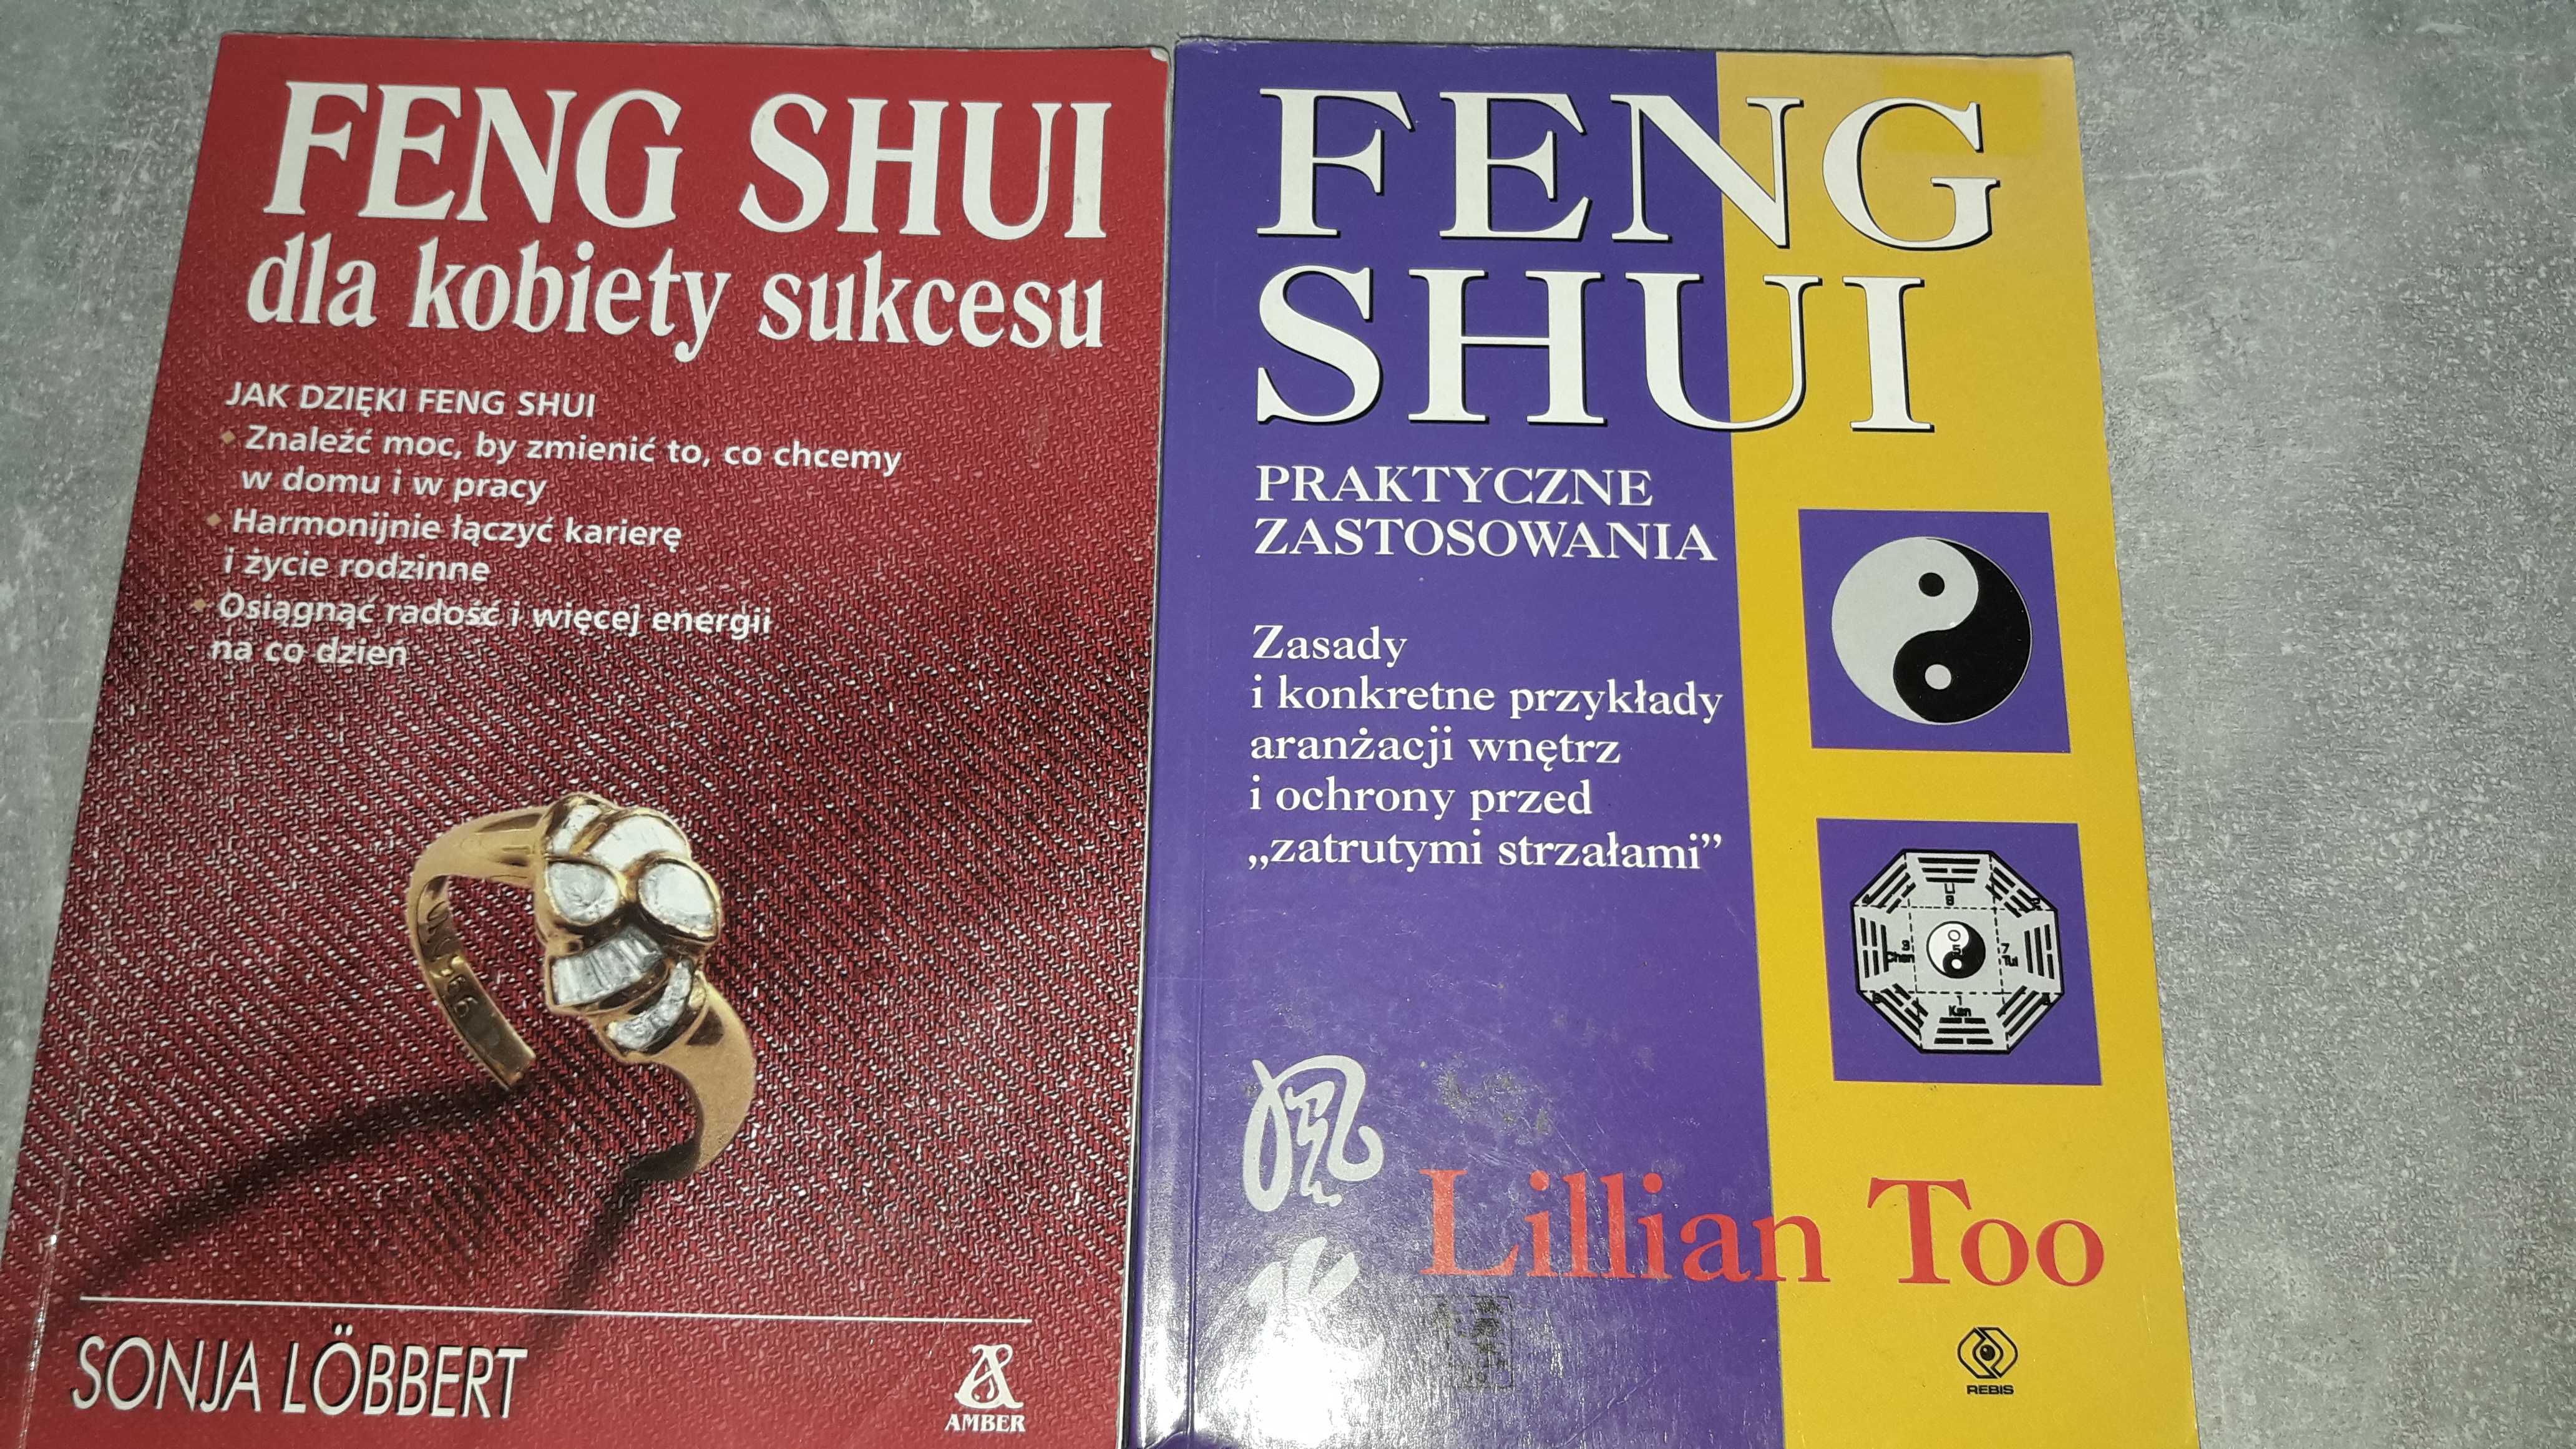 Feng Shui cena za 2 książki.